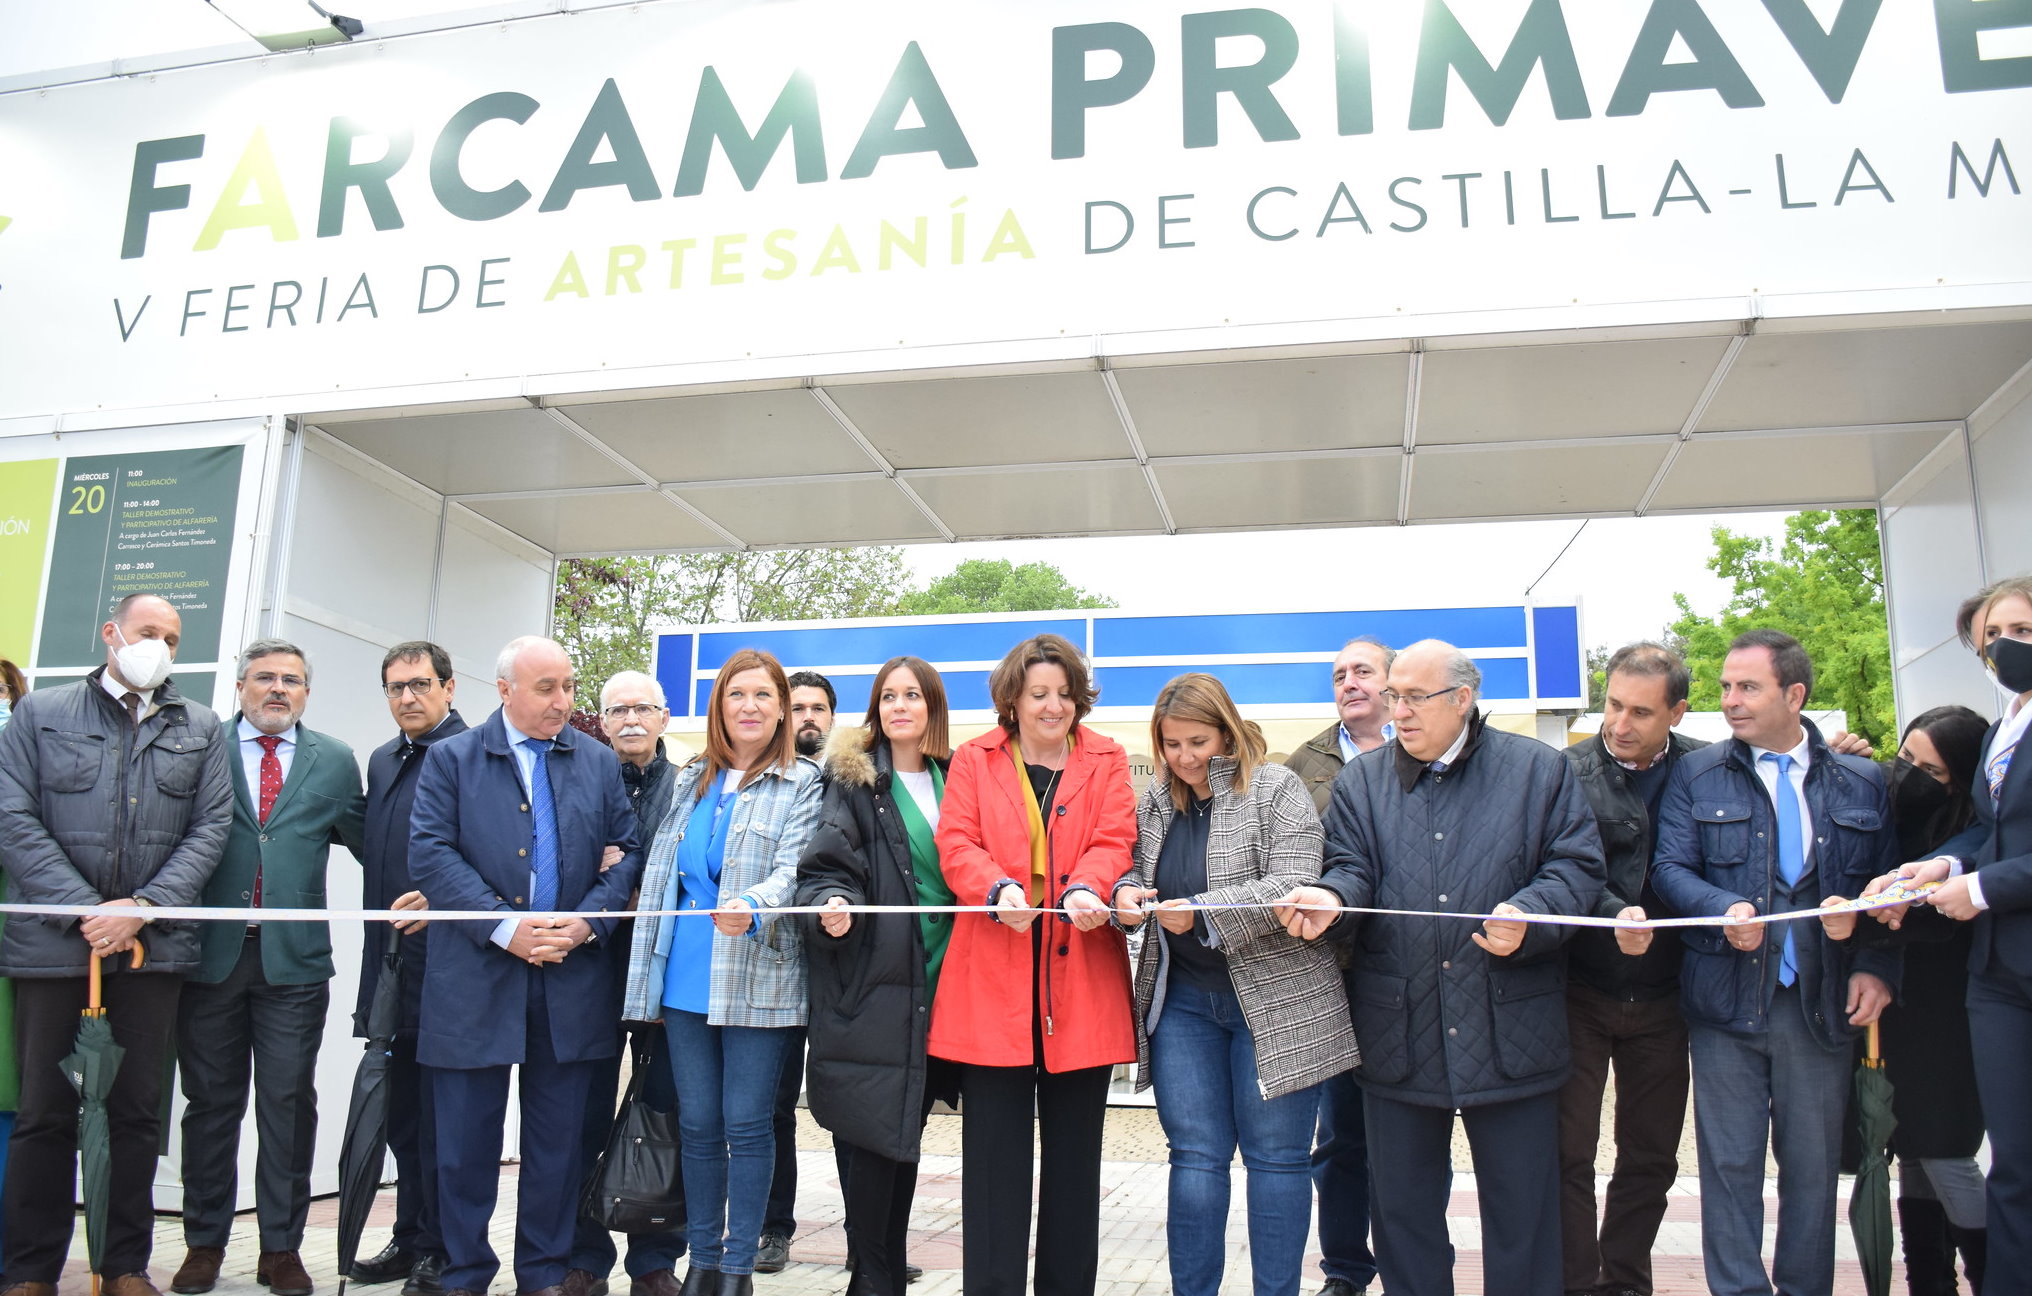 Inauguración de Farcama Primavera en Talavera, que se celebrará hasta el domingo 24.